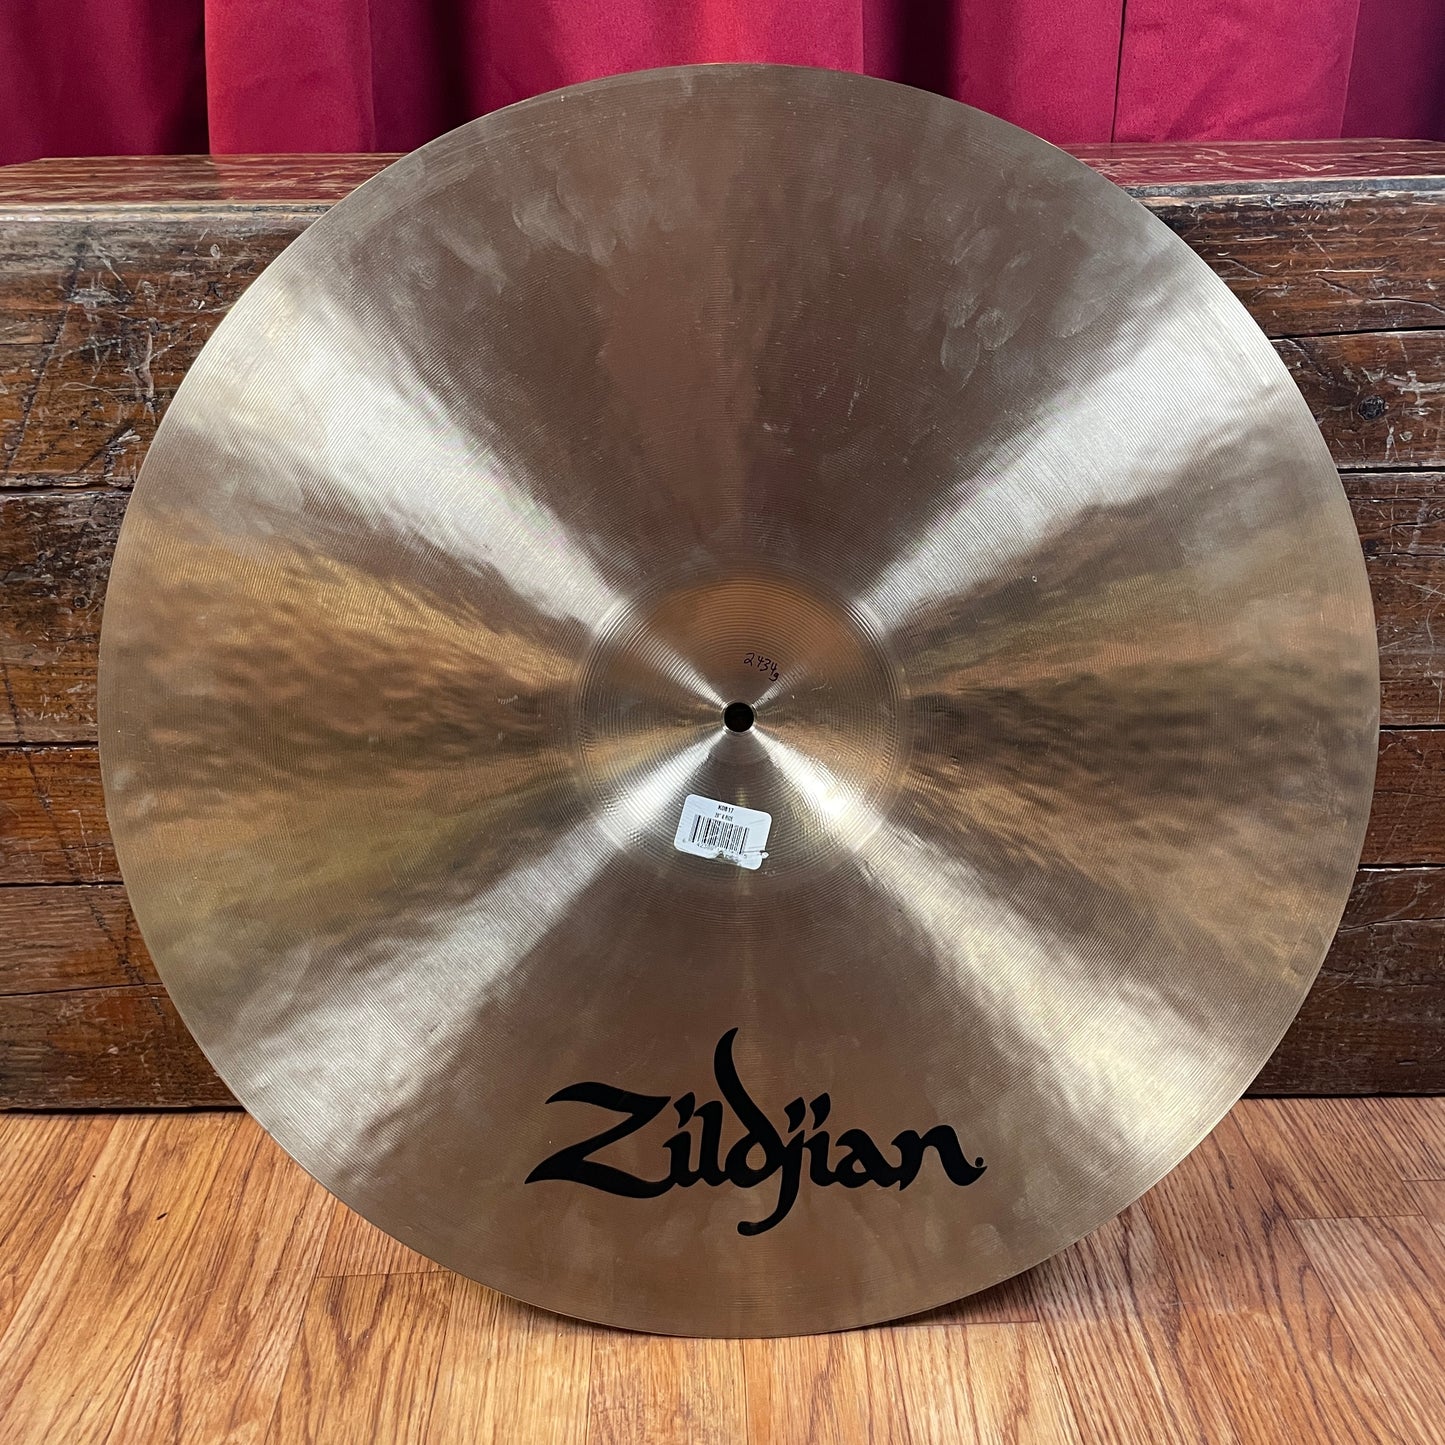 20" Zildjian K Ride Cymbal 2434g K0817 *Video Demo*